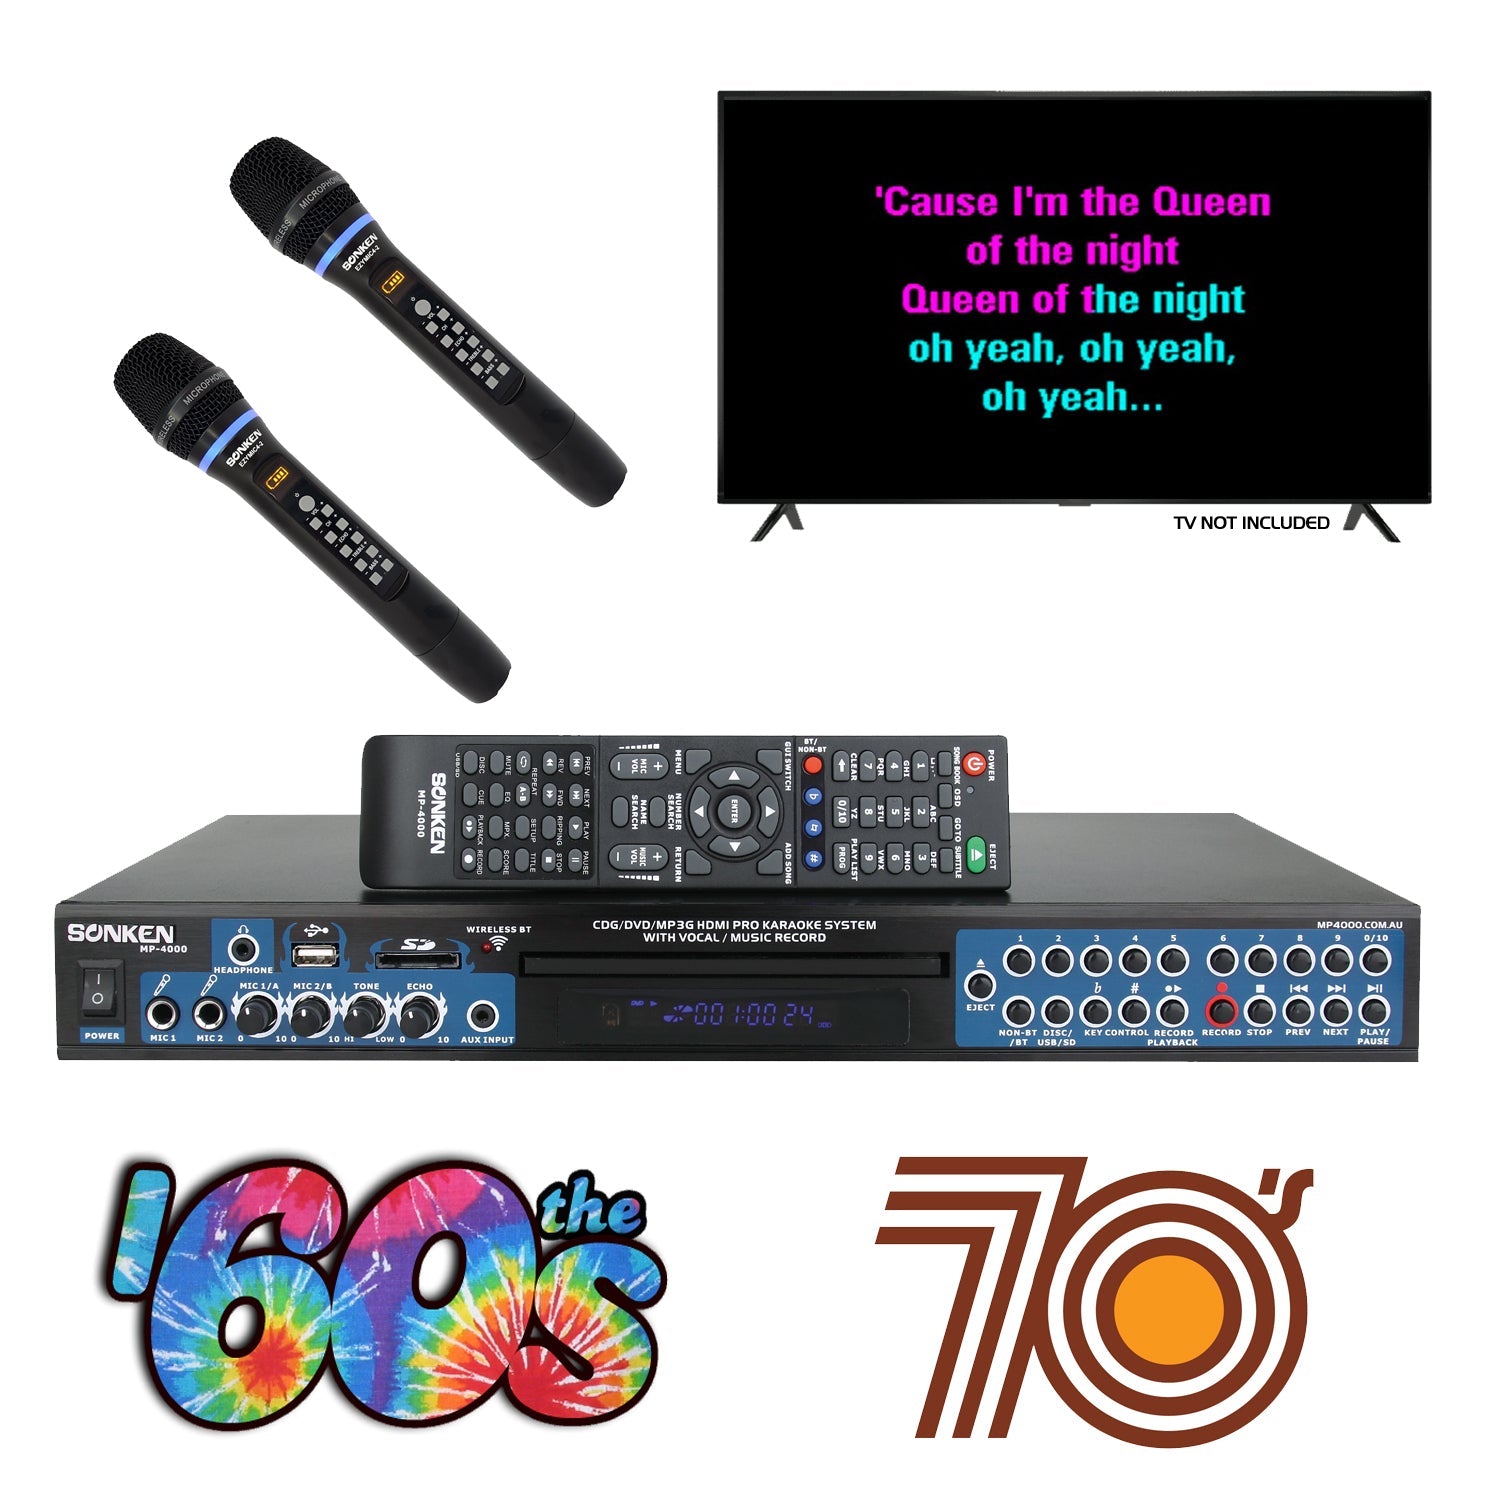 Sonken MP4000 Pro Karaoke Machine + 435 Songs from the 60's & 70's + 2 Wireless Microphones - Karaoke Home Entertainment